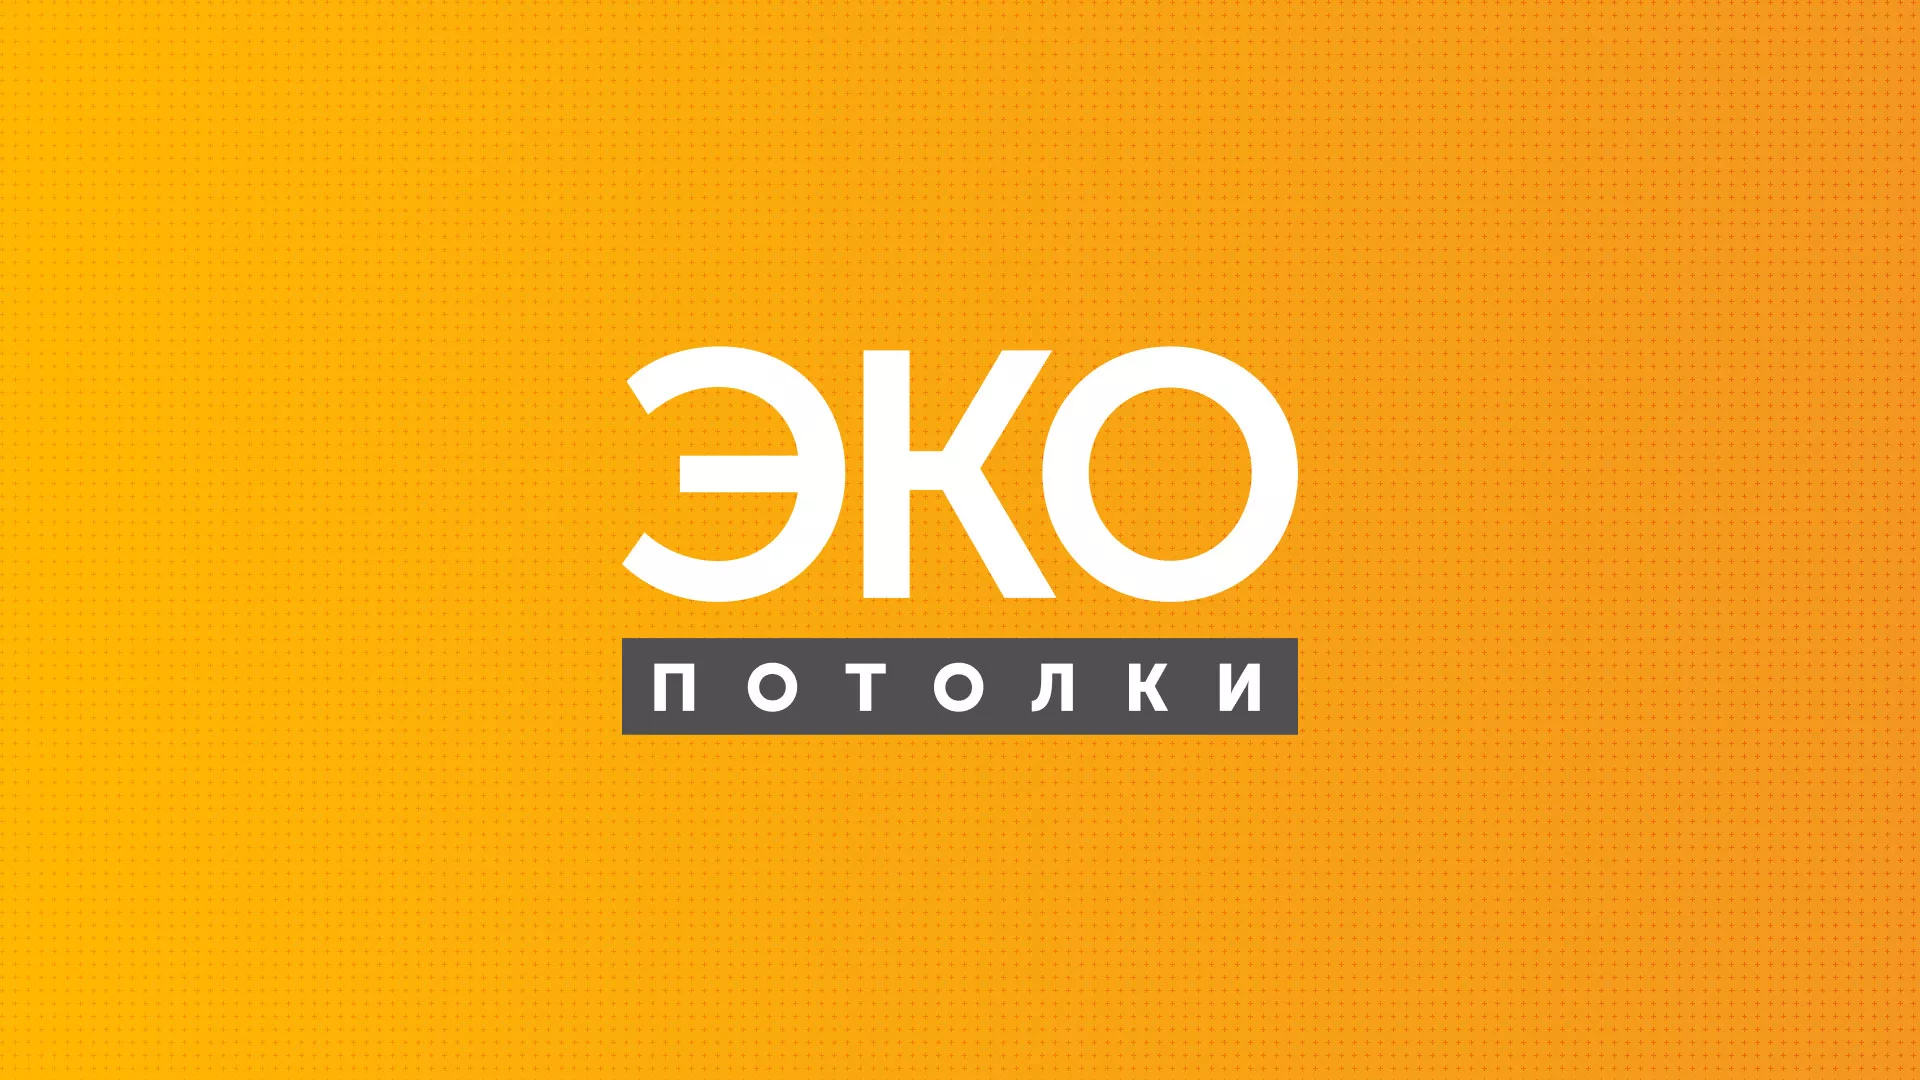 Разработка сайта по натяжным потолкам «Эко Потолки» в Электрогорске